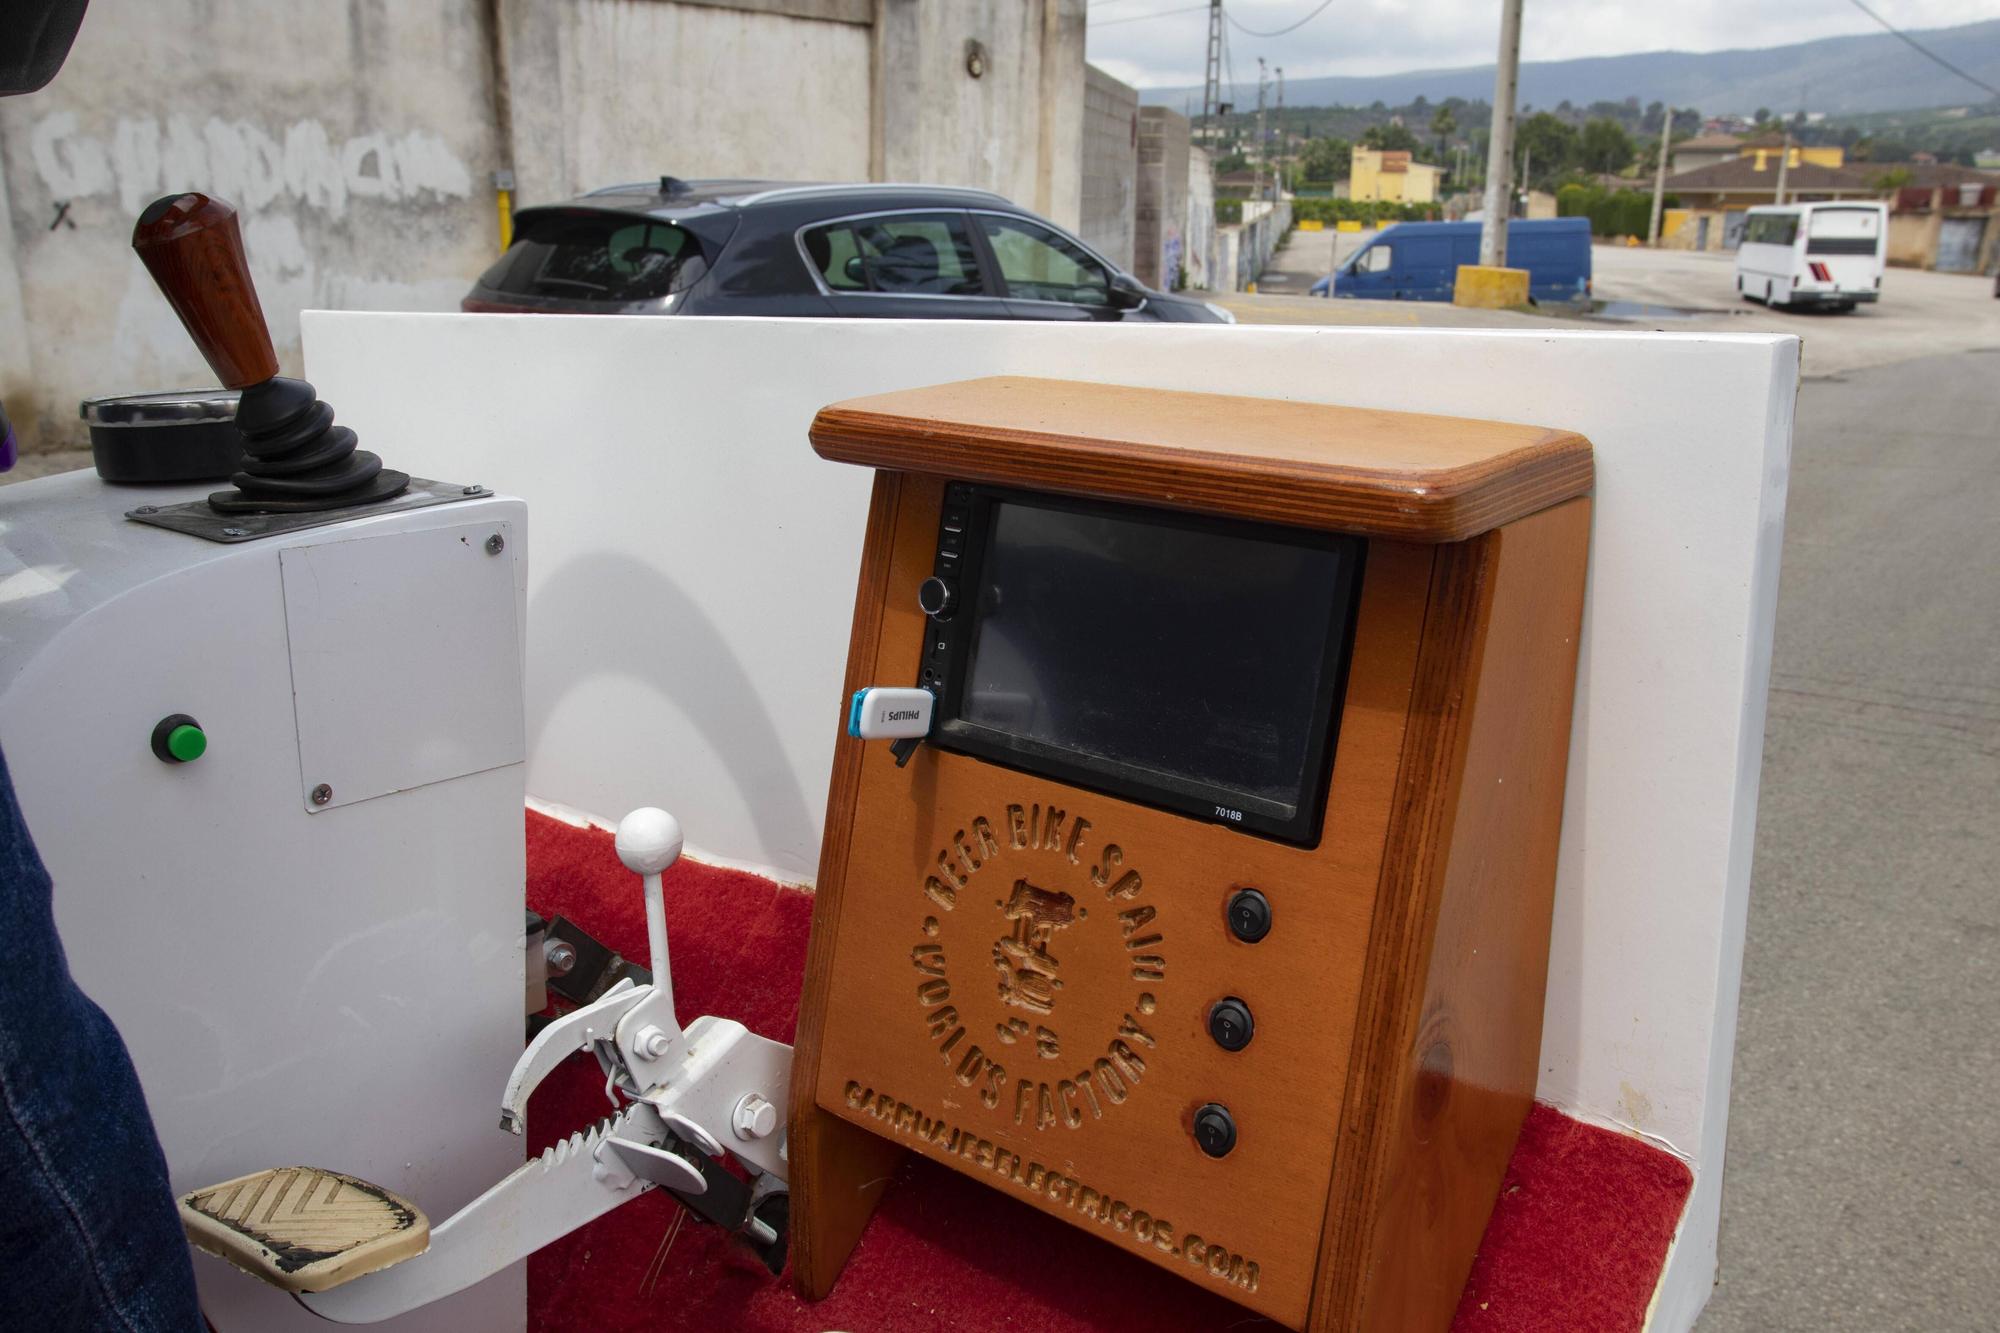 Las calesas eléctricas "made in Xàtiva" que quieren llegar a las grandes ciudades